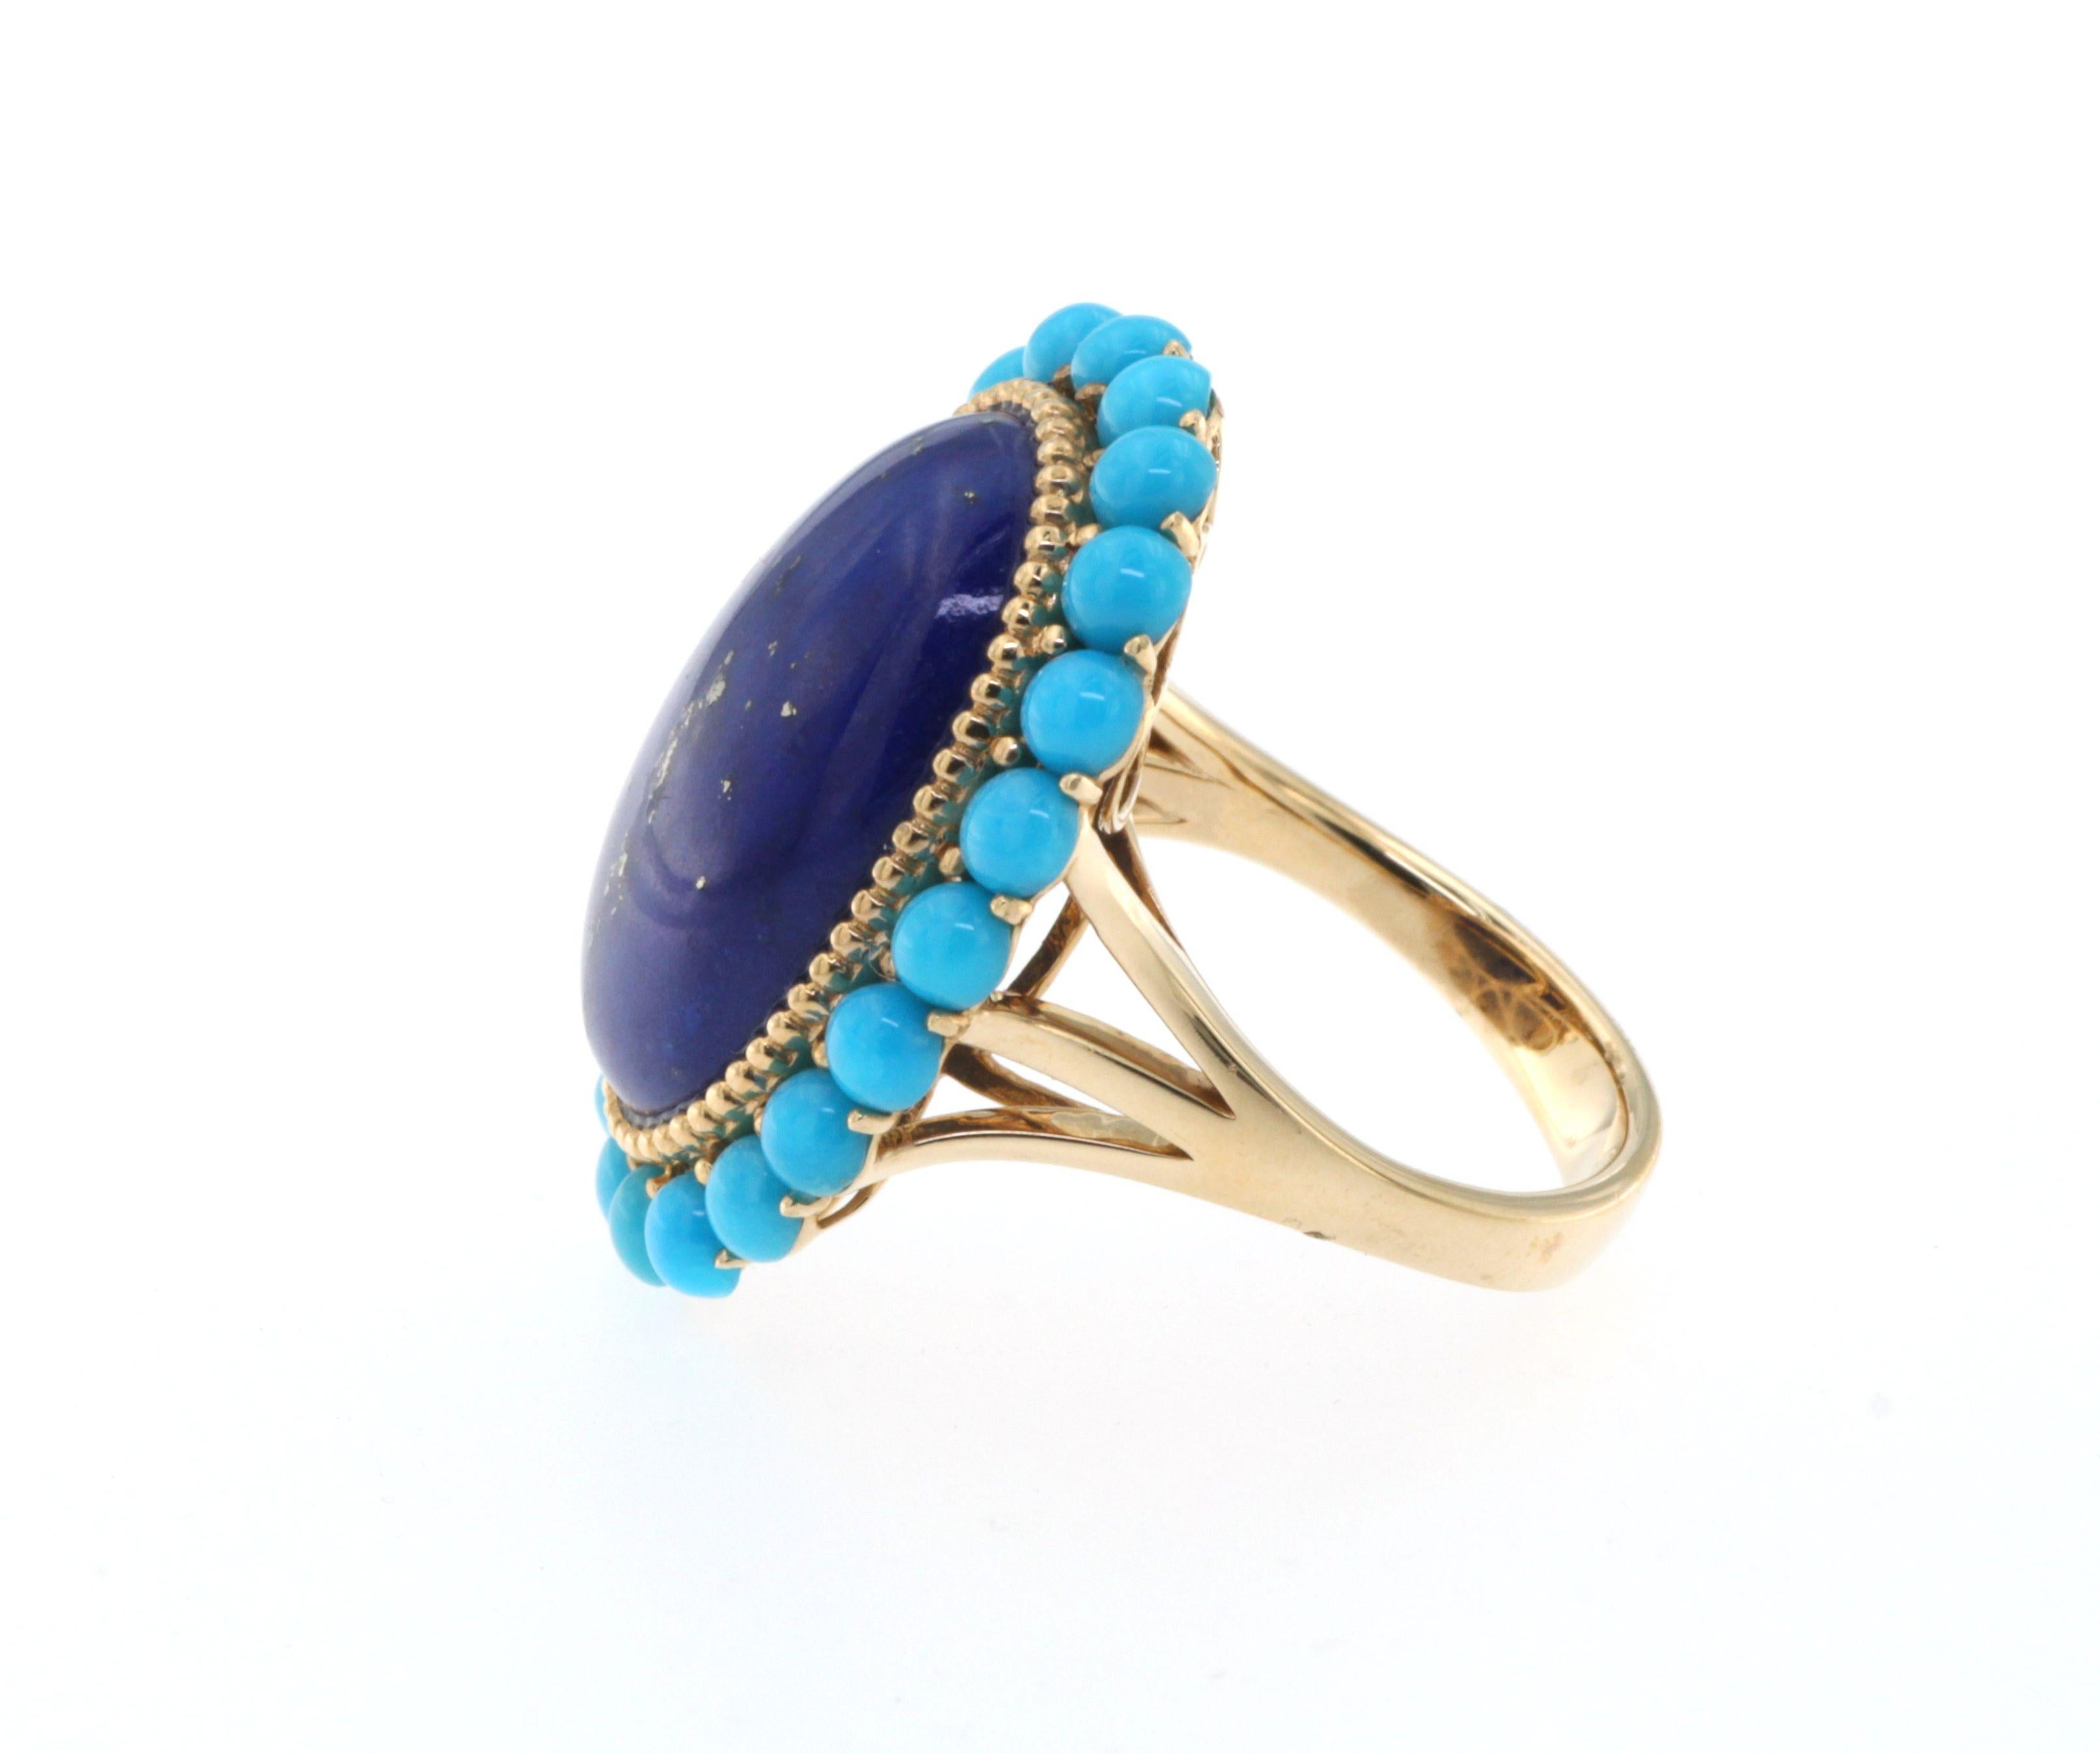 Oval Cut Lapis Lazuli Turquoise Ring in 14 Karat Yellow Gold